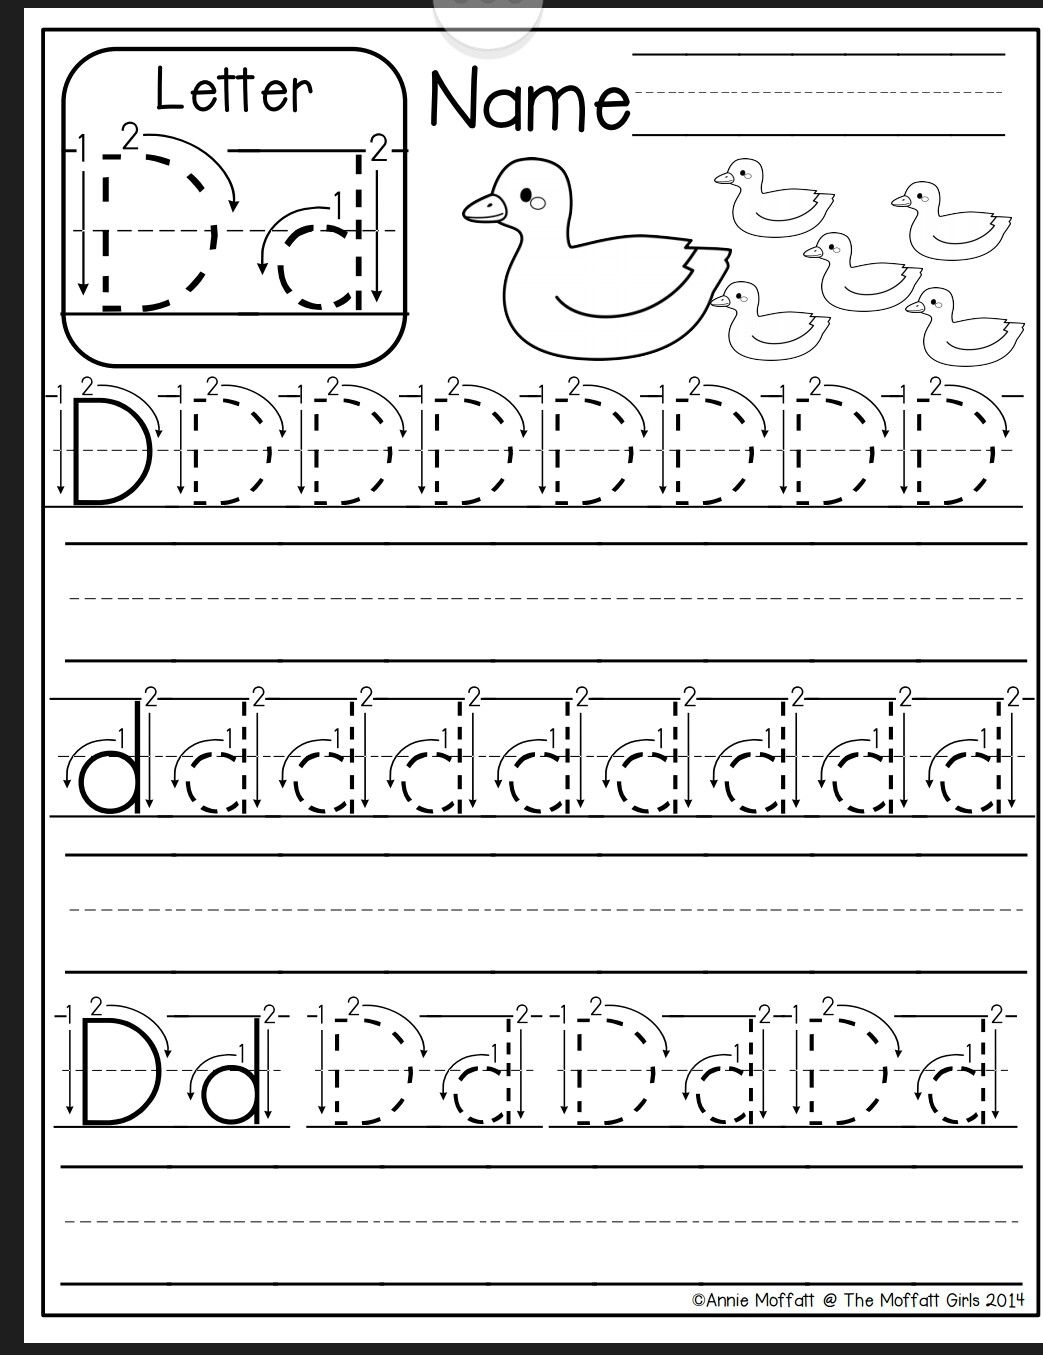 Letter D Worksheer | Preschool Writing, Printable Preschool for Trace Letter D Worksheets Preschool